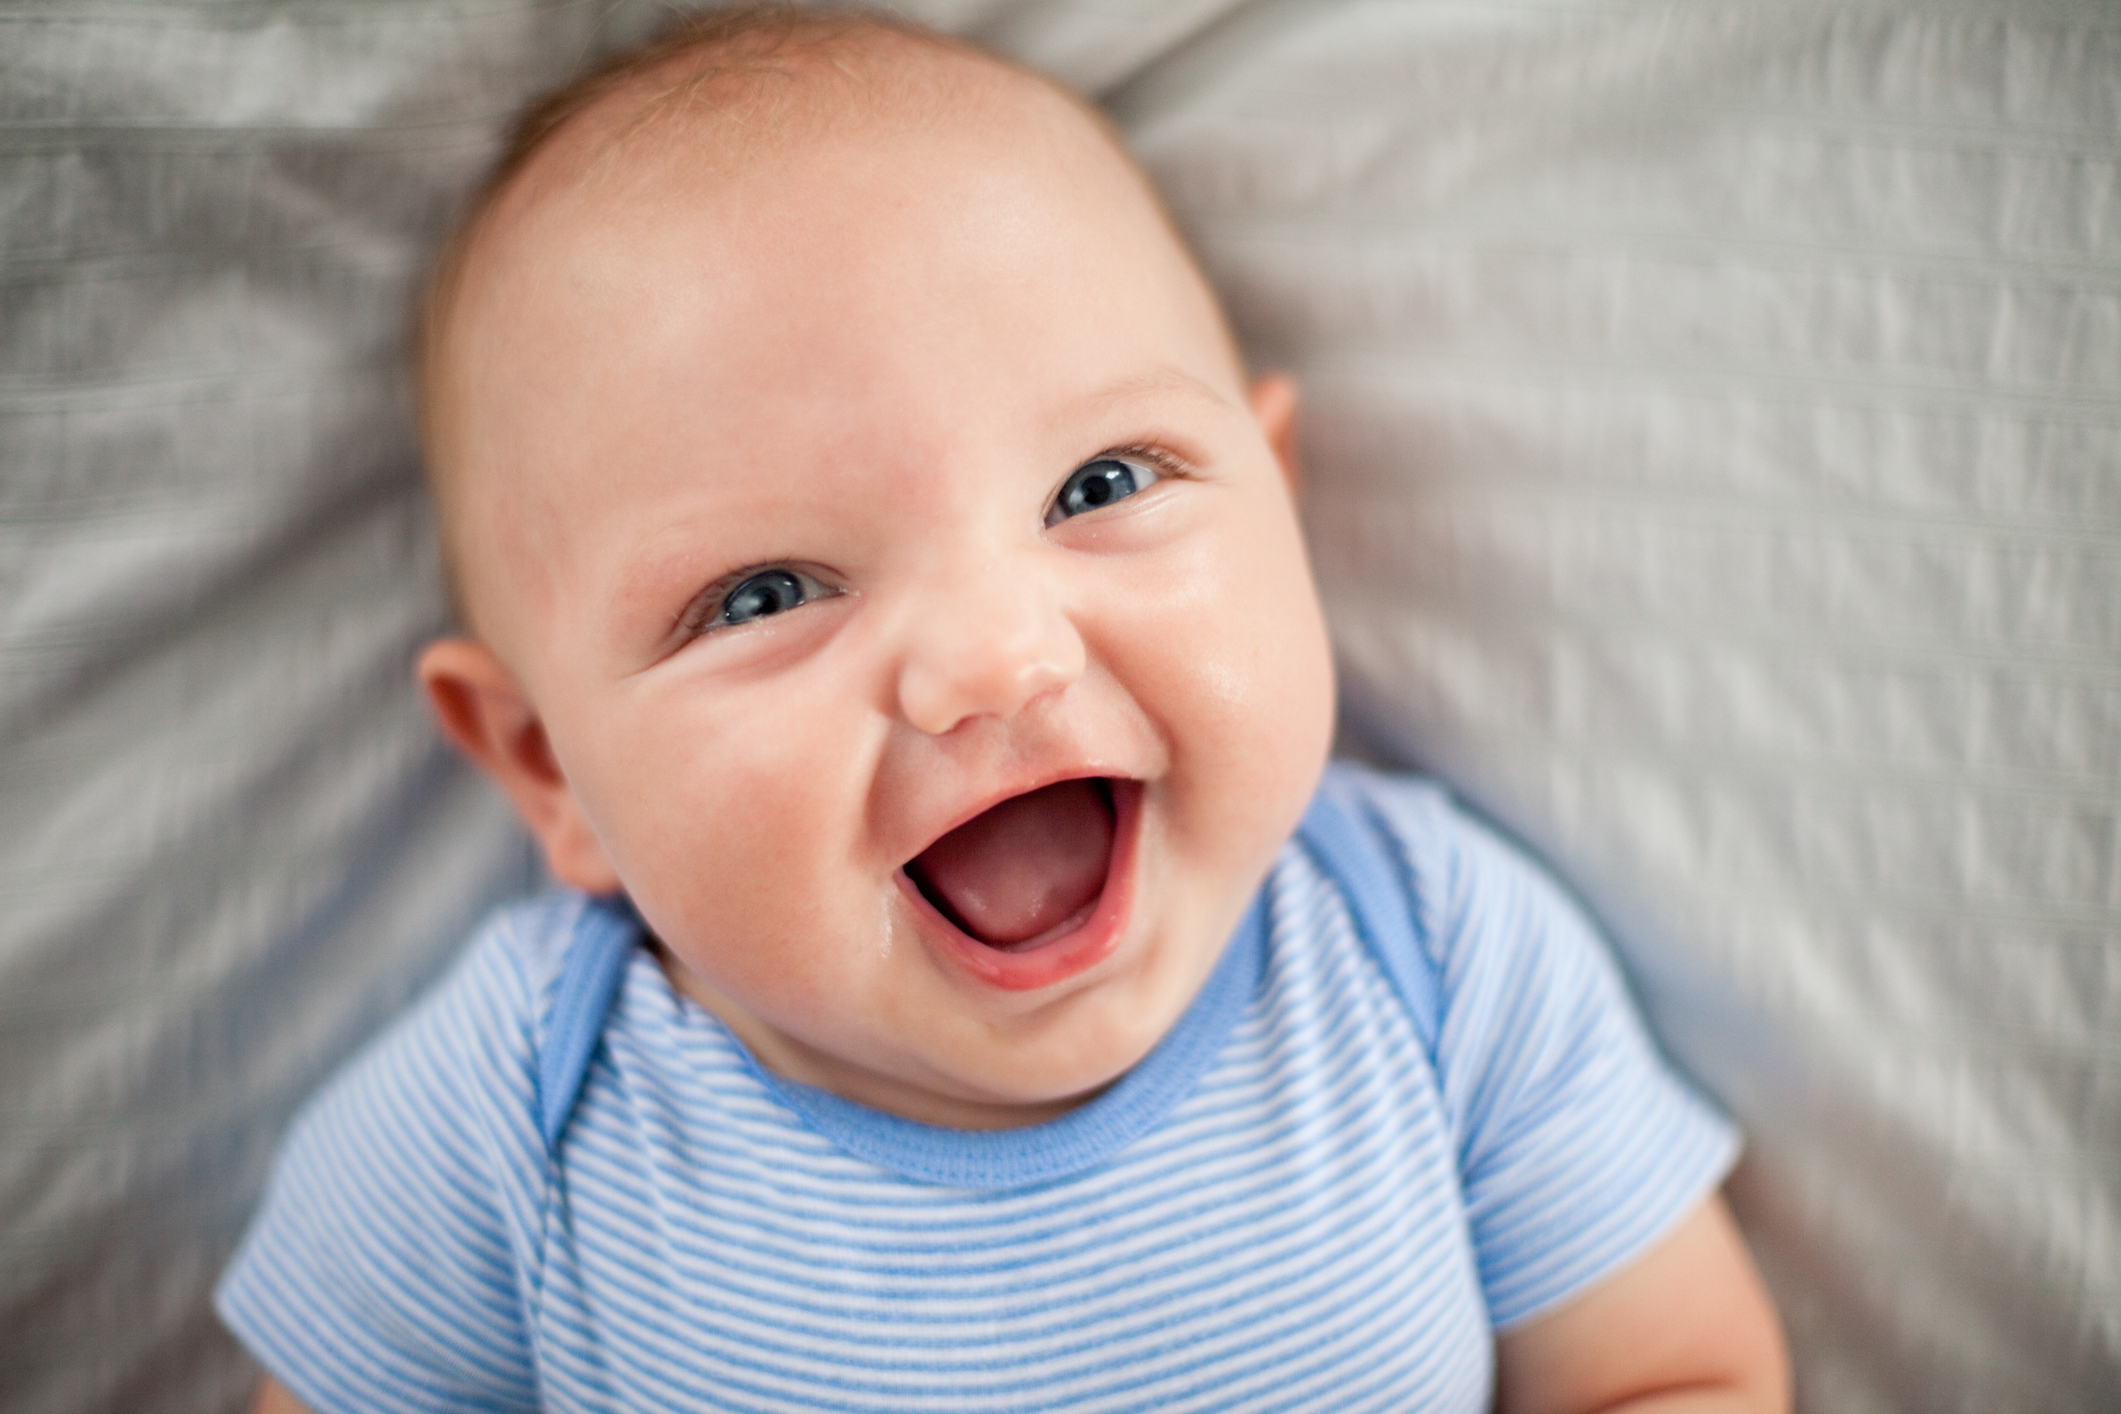 Когда новорожденный улыбается и когда начинает смеяться?